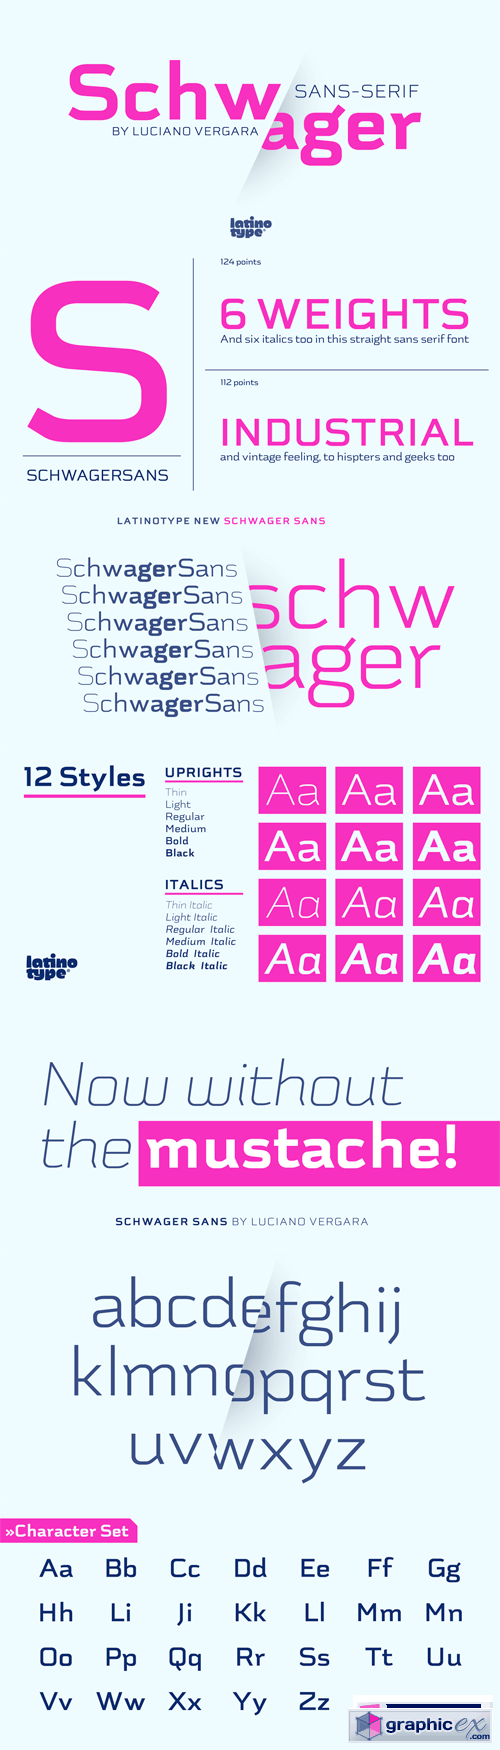 Schwager Sans Font Family - 12 Fonts for $149